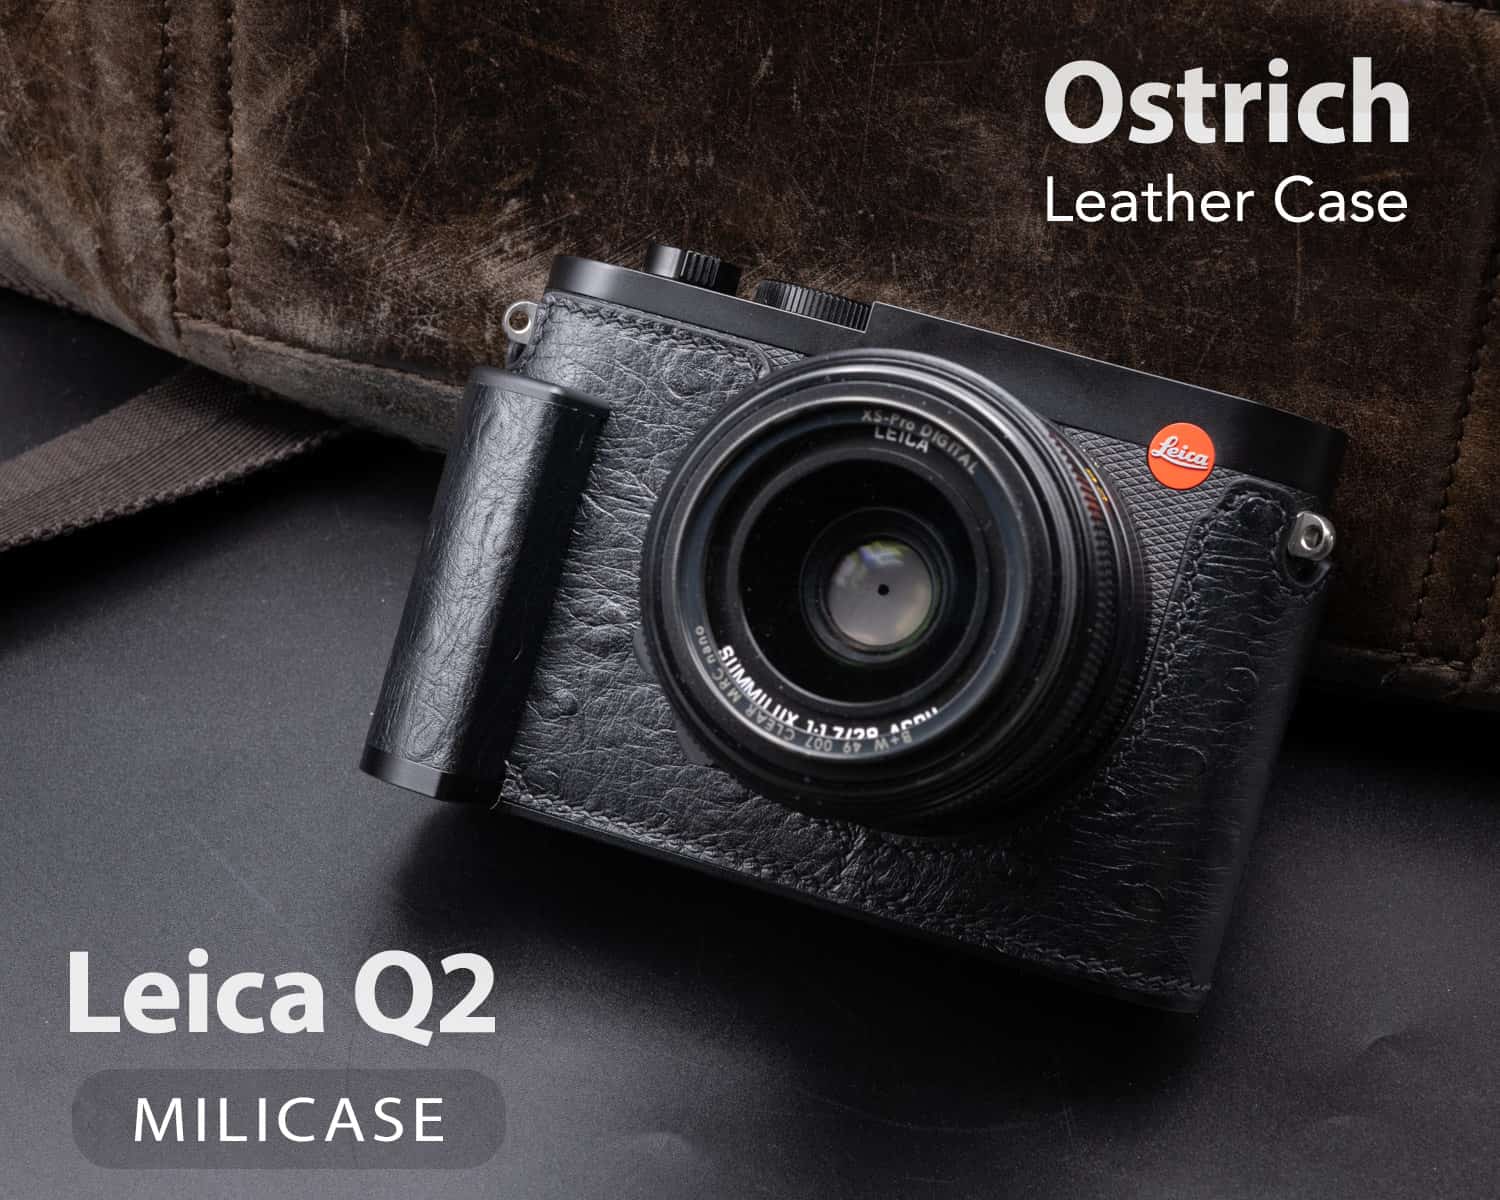 เคส Leica Q2 Ostrich Milicase หนังนอกกระจอกเทศ มีกริป